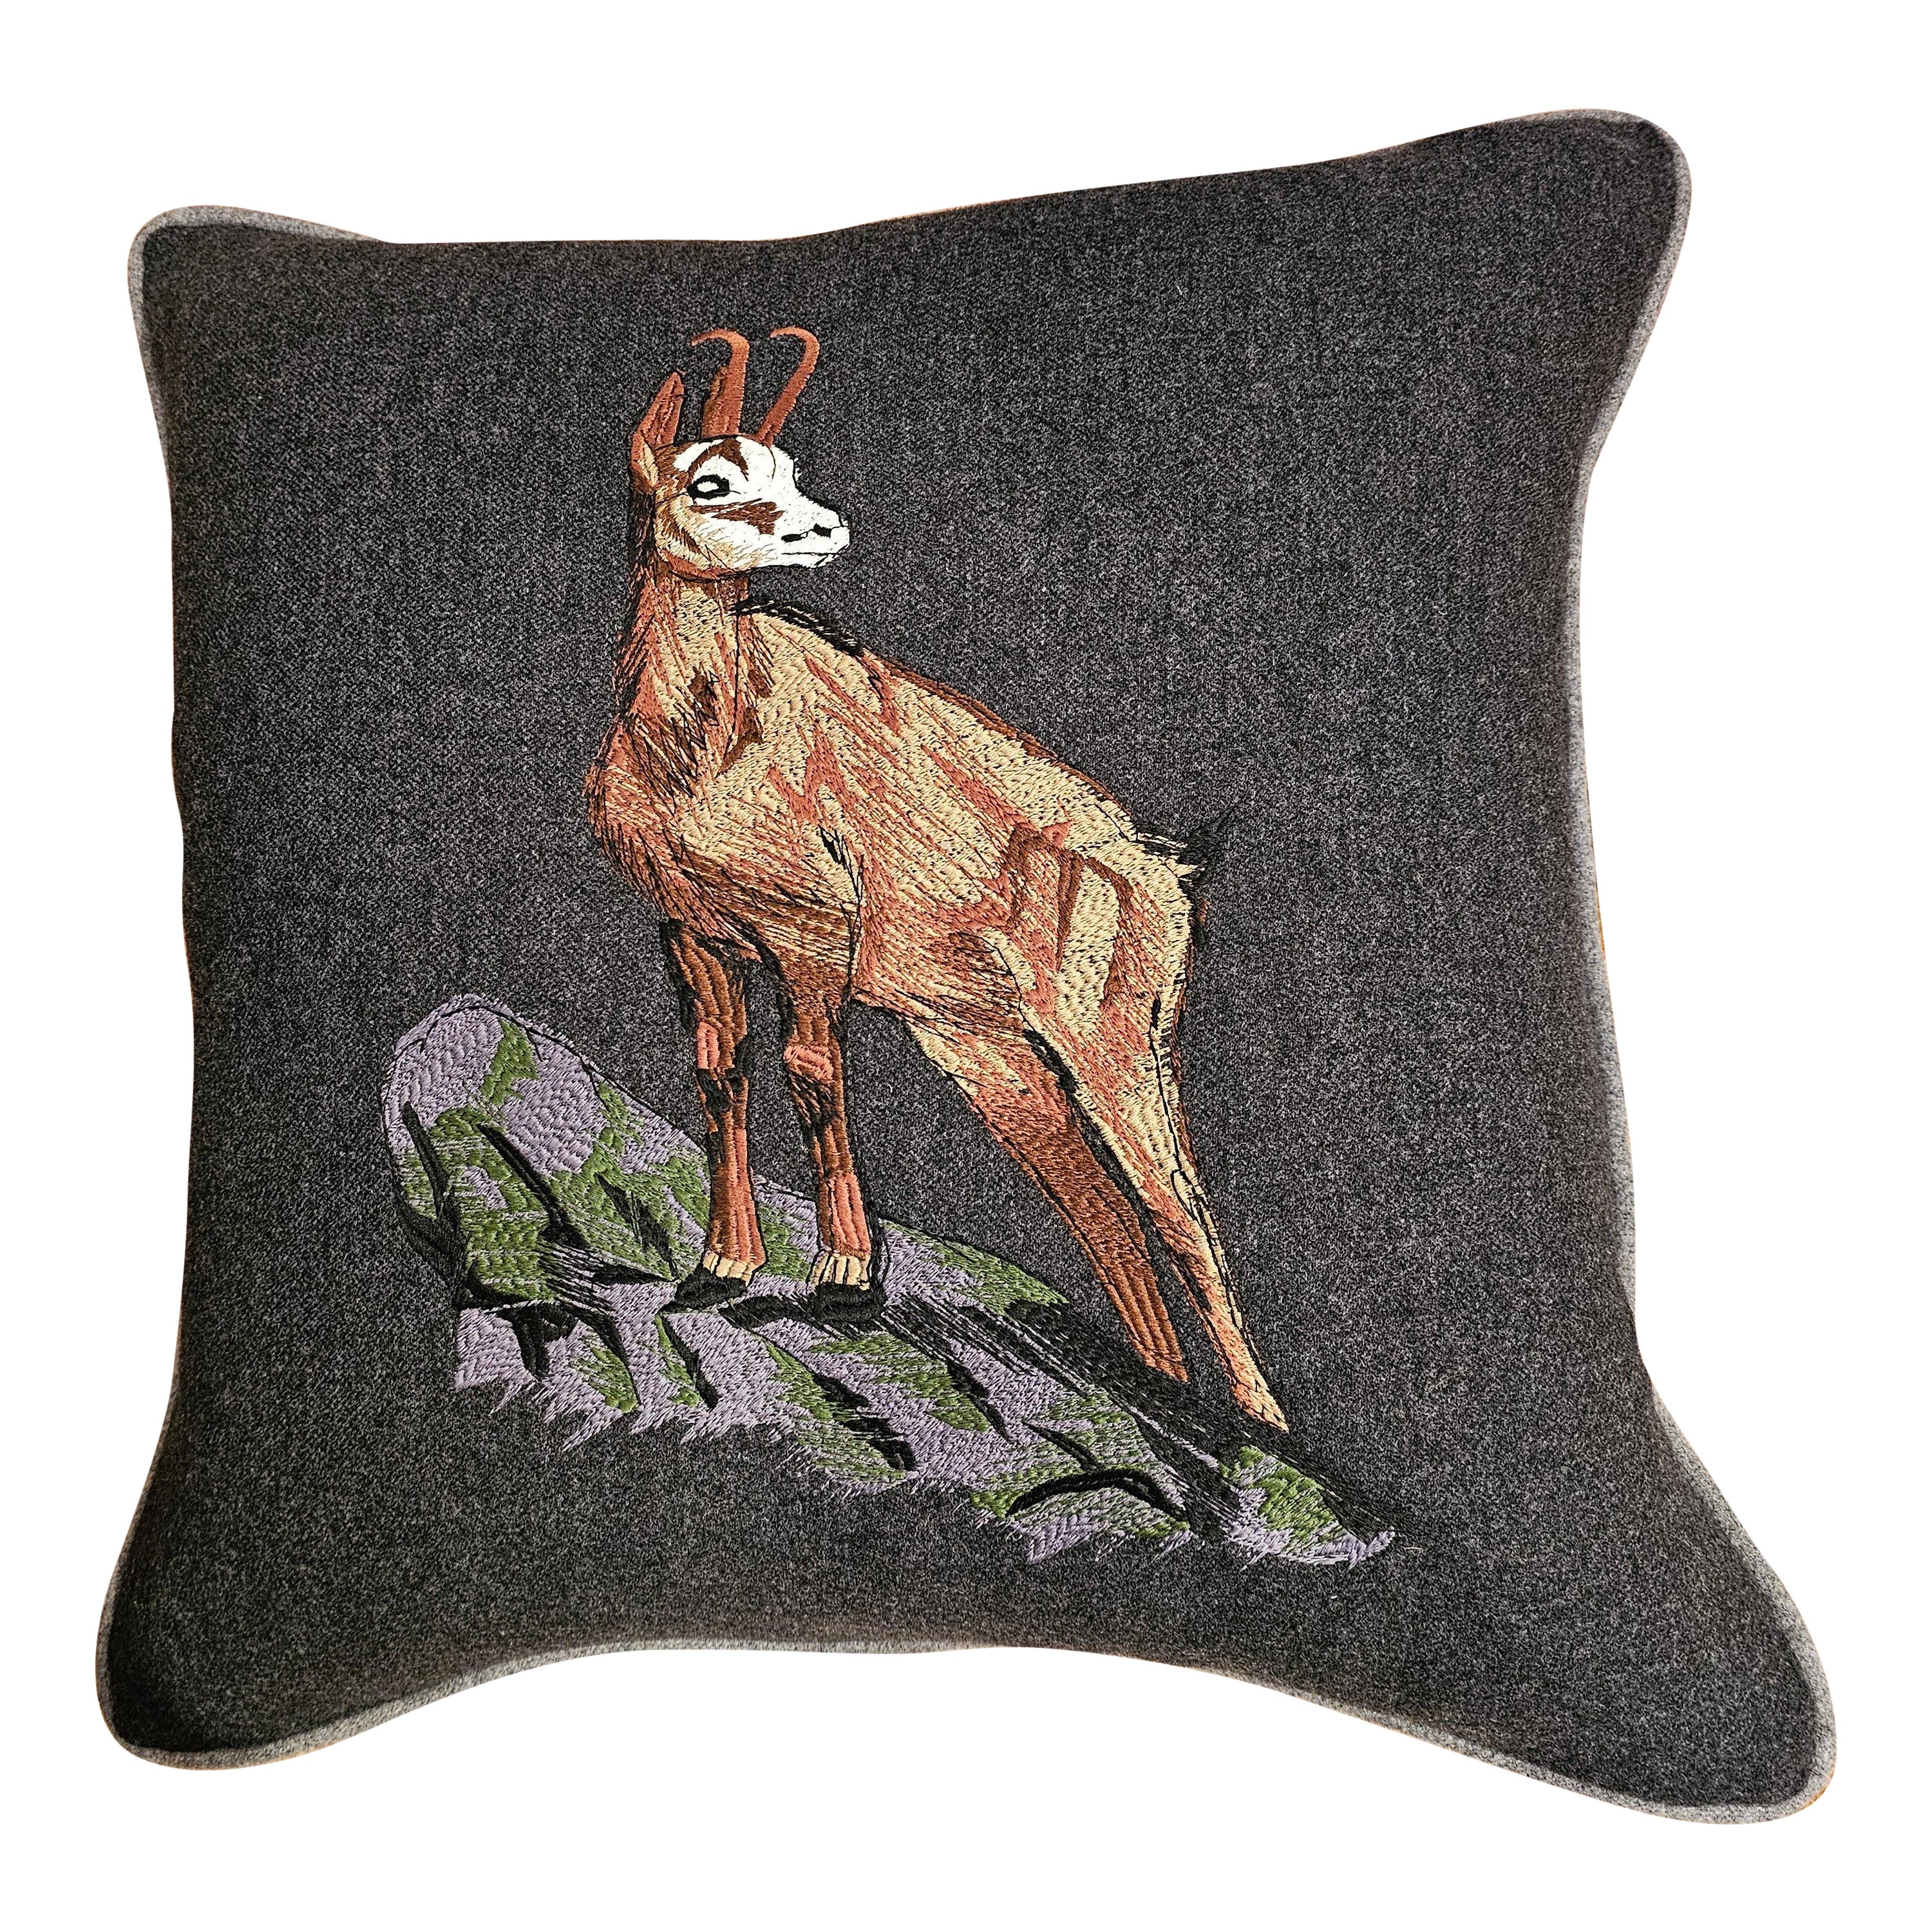 Black Forest Cushion Deer Loden Stitched Sofina Boutique Kitzbühel